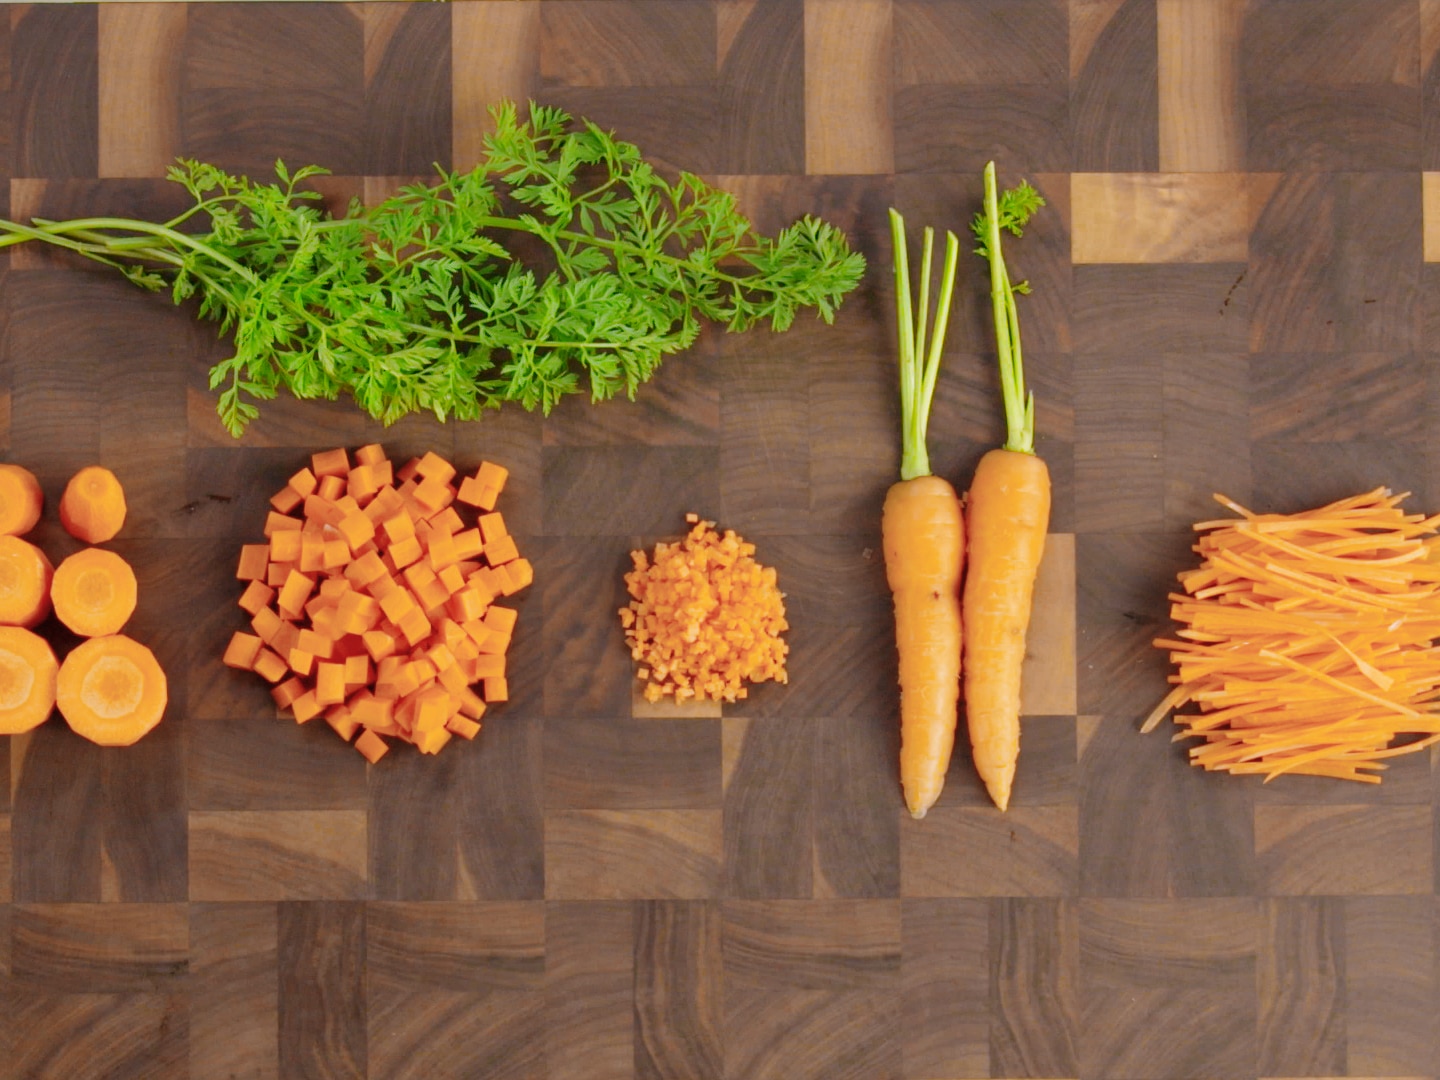 Tailler une carotte en paysanne - Glossaire culinaire